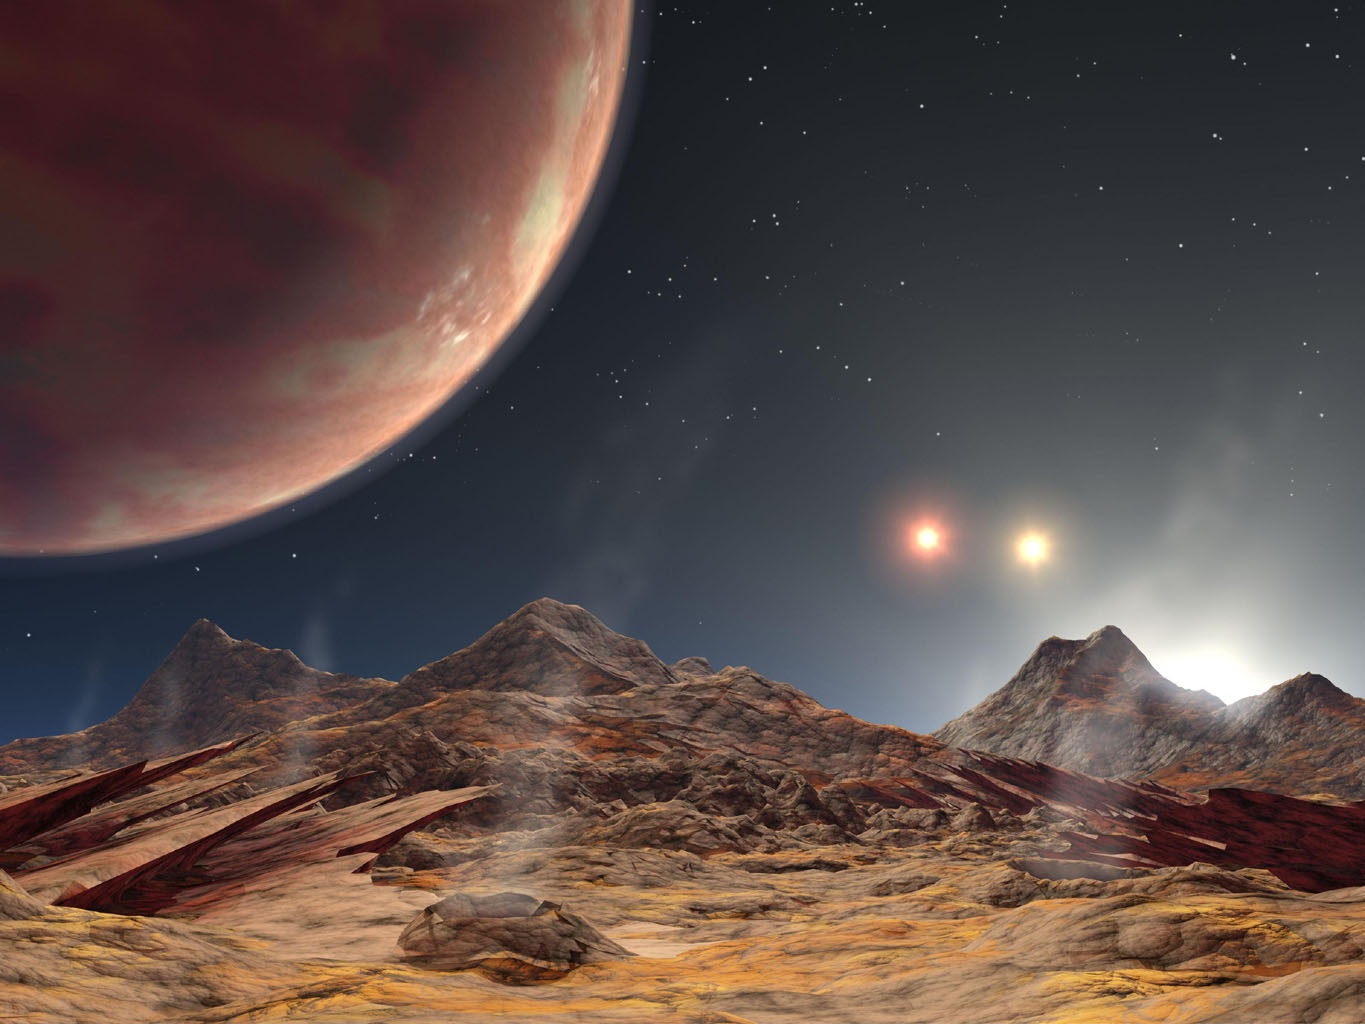 اكتشاف كوكب خارجي في نظام ثلاثي الشموس - أكد علماء الفلك أخيرًا وجود كوكب غازي عملاق يدور حول نجم في نظام نجمي ثلاثي على بعد 1800 سنة ضوئية